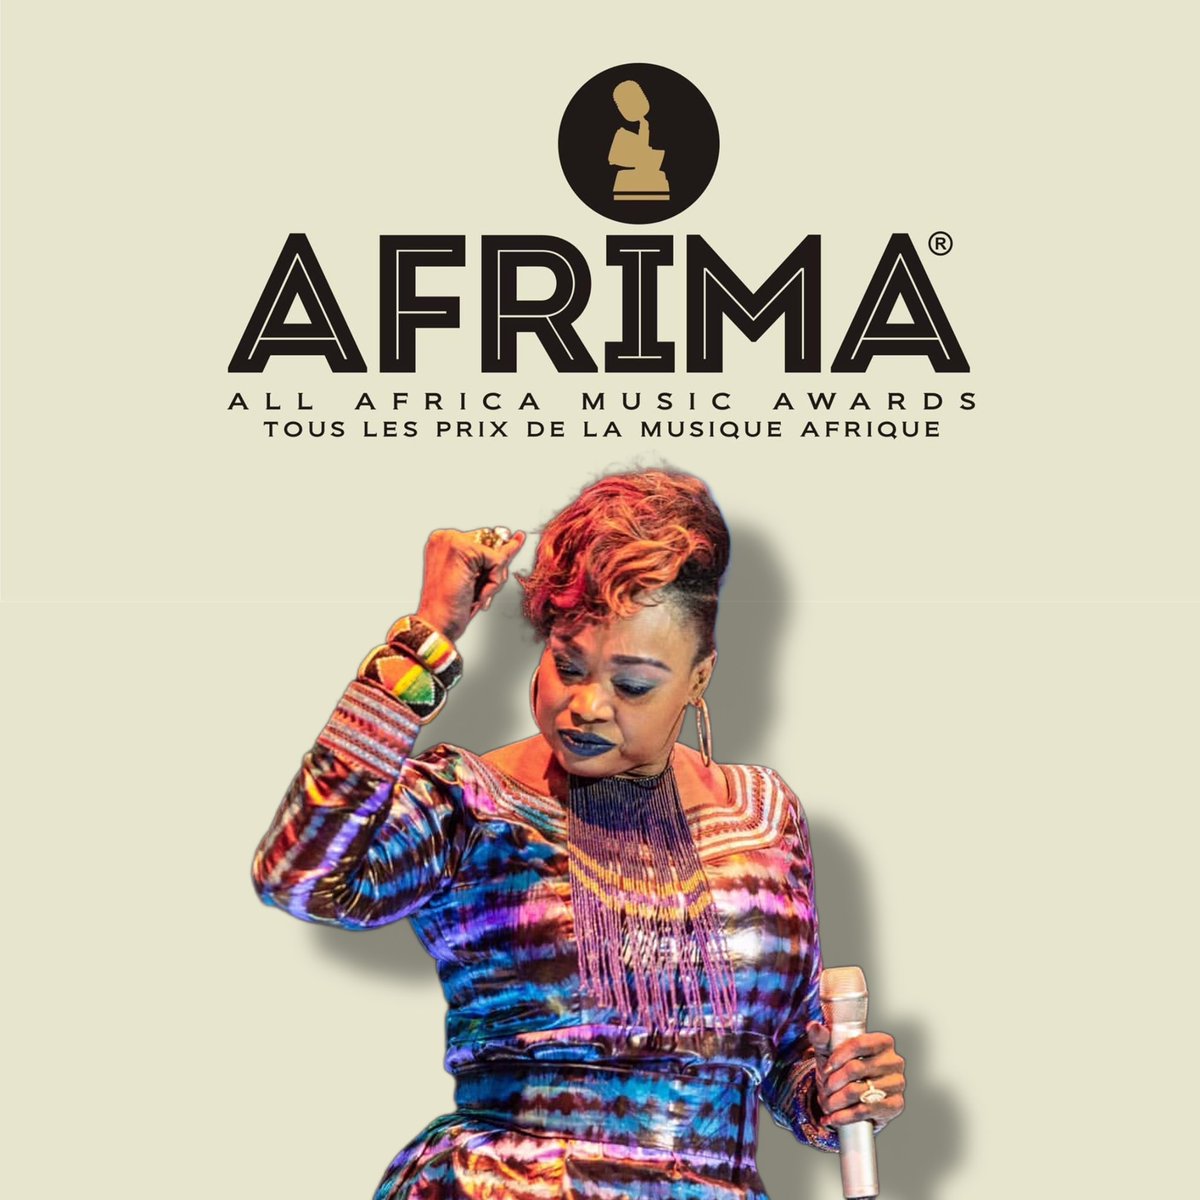 Je suis nominée pour les AFRIMA 2022 👉🏾ALBUM DE L’ANNÉE afrima.org/AFRIMA2022Voti… 👉🏾ARTISTE FÉMININE OUEST-AFRICAINE afrima.org/AFRIMA2022Voti… 👉🏾MEILLEURE ARTISTE TRADITIONNELLE afrima.org/AFRIMA2022Voti… Ce sont les fans qui votent, je compte donc sur vous. Votez, partagez ♥️